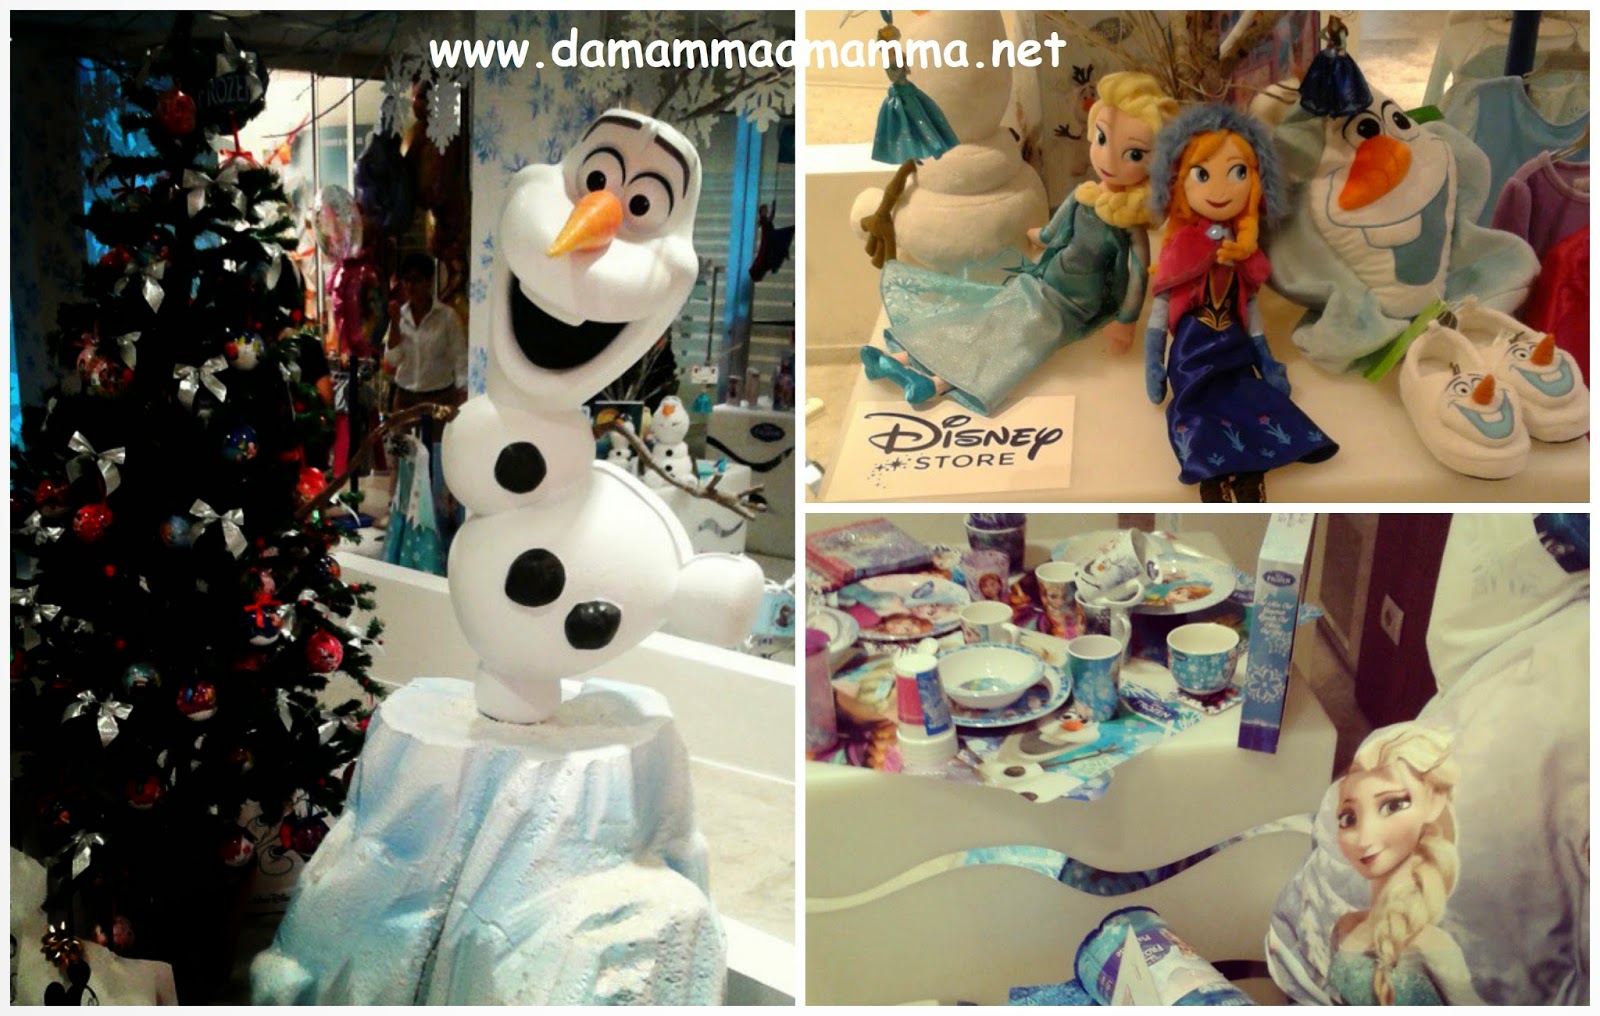 Decorazioni Natalizie Disney Store.Novita Disney Per Il Natale 2014 Da Mamma A Mamma